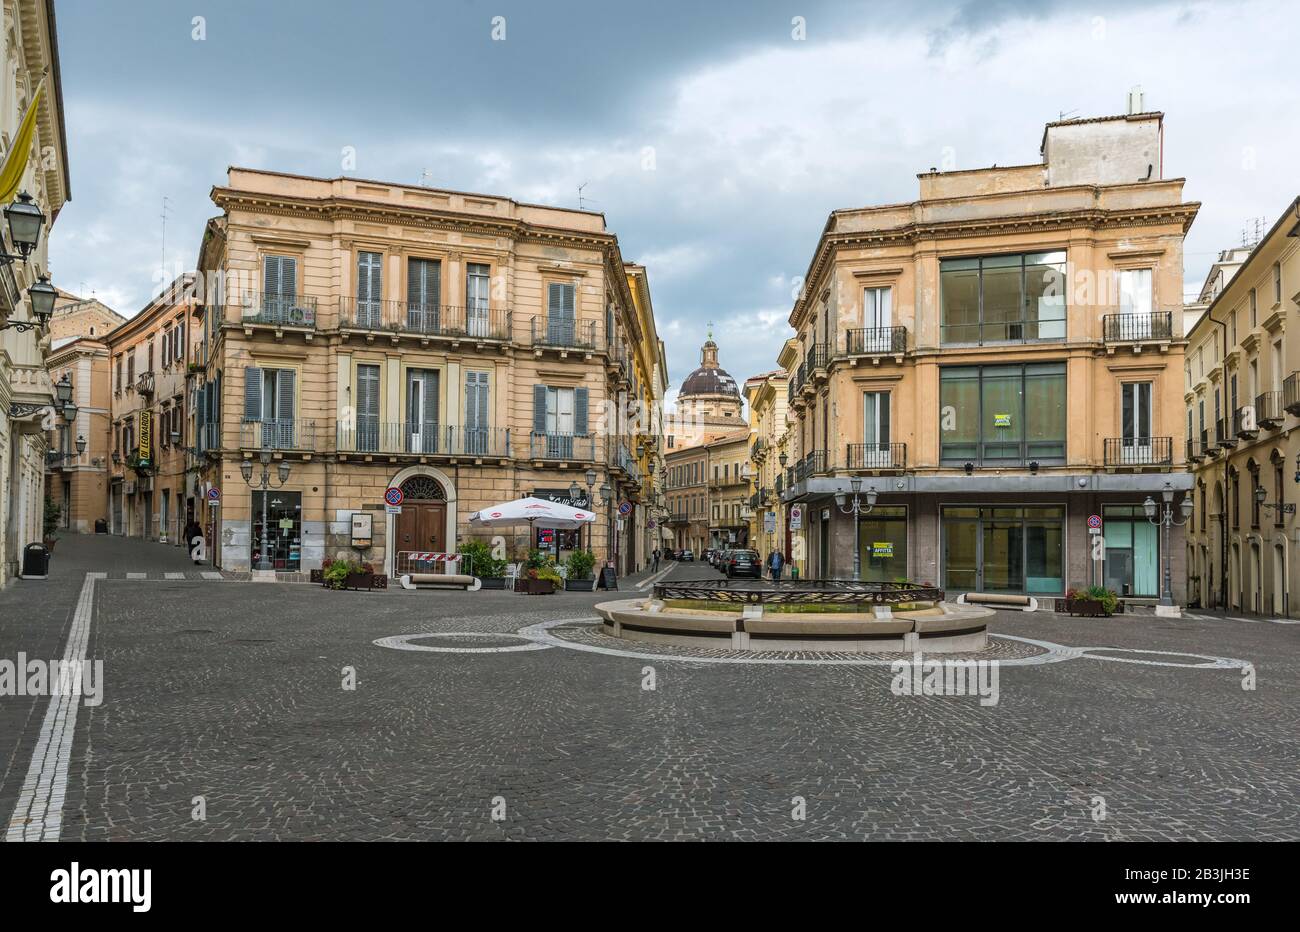 Chieti (Italie) - Vue Sur le centre historique de Chieti, la capitale provinciale de la région des Abruzzes, au centre de l'Italie Banque D'Images